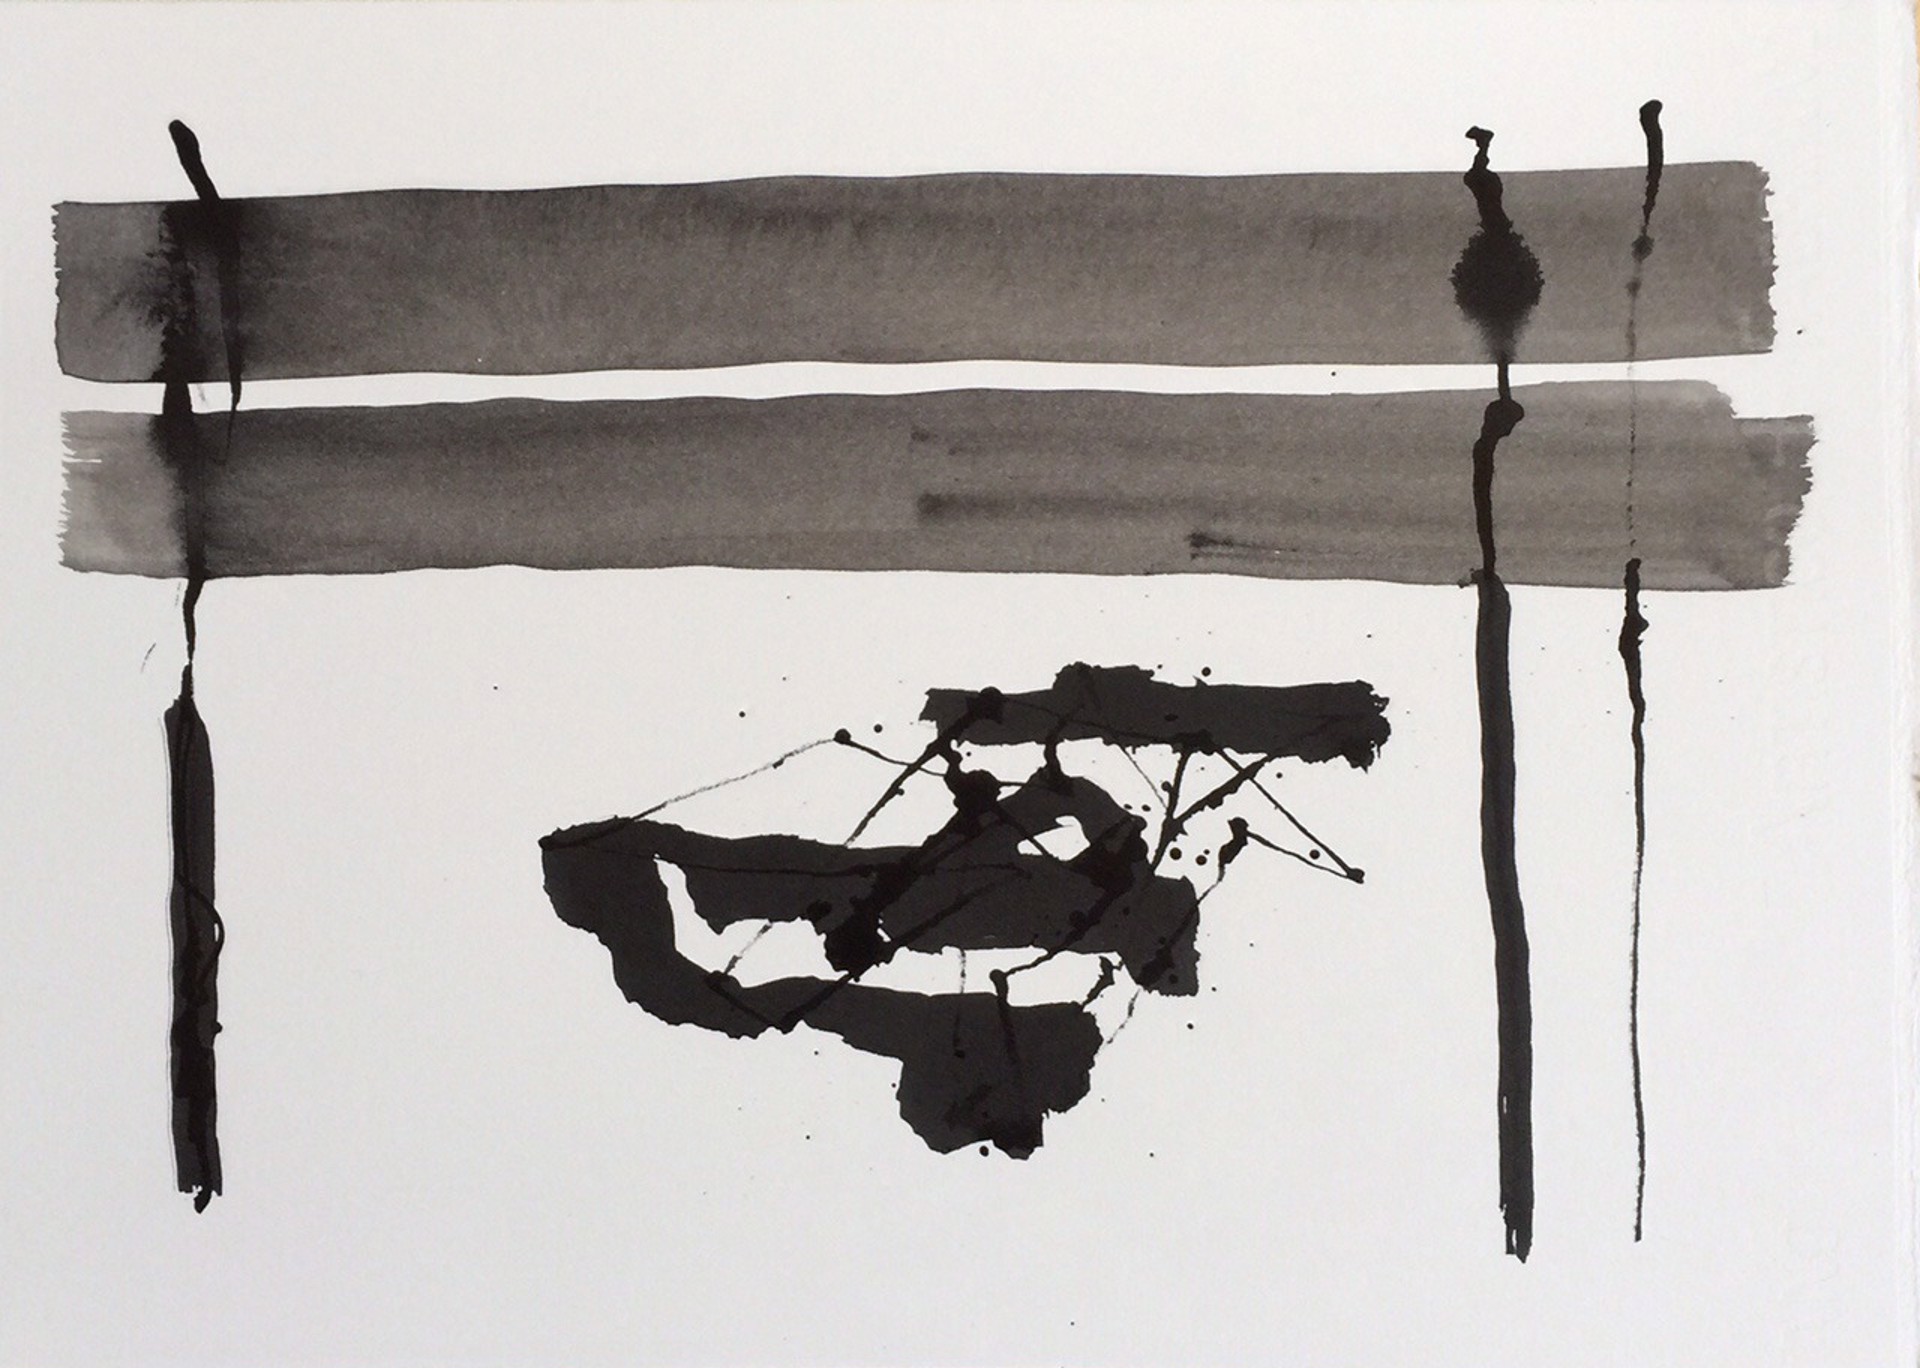 Abstract no. 2, 2015 by John Goodman